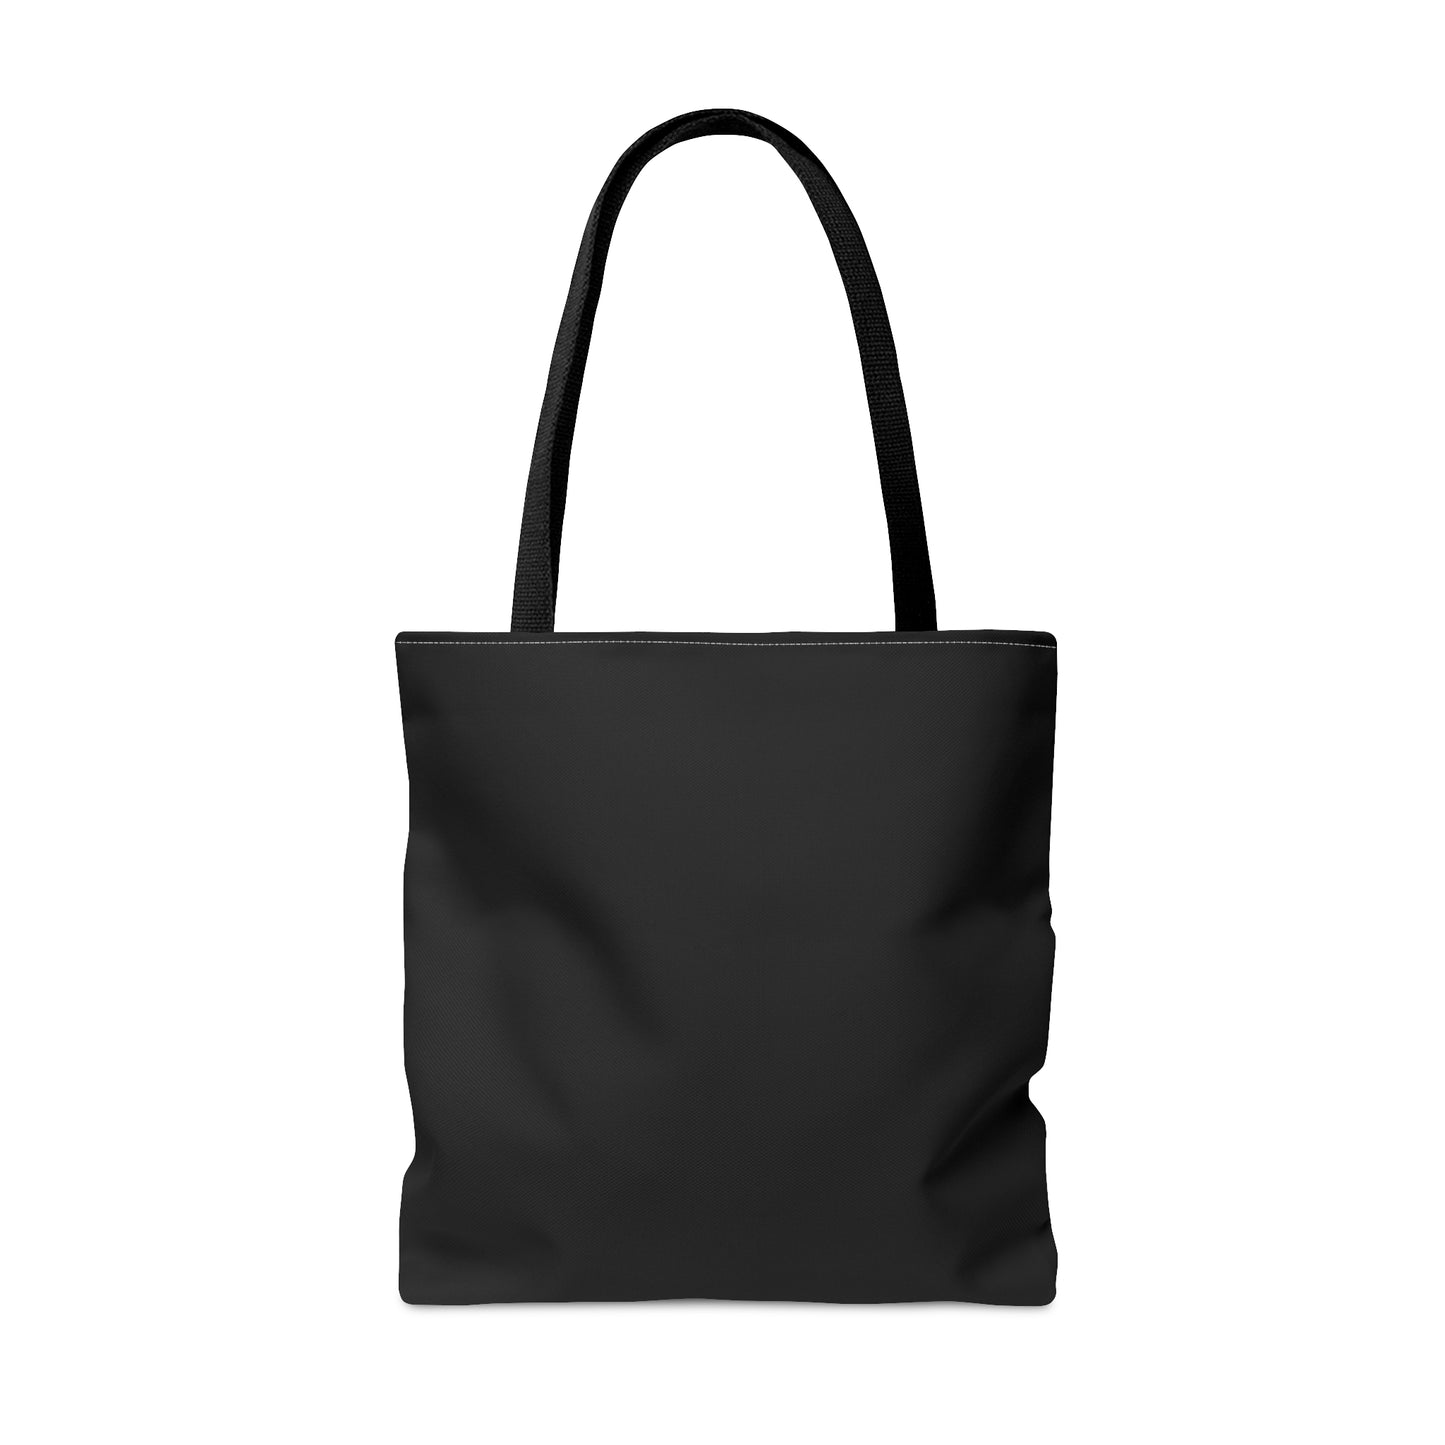 Glad Midsommar Tote Bag (Black)